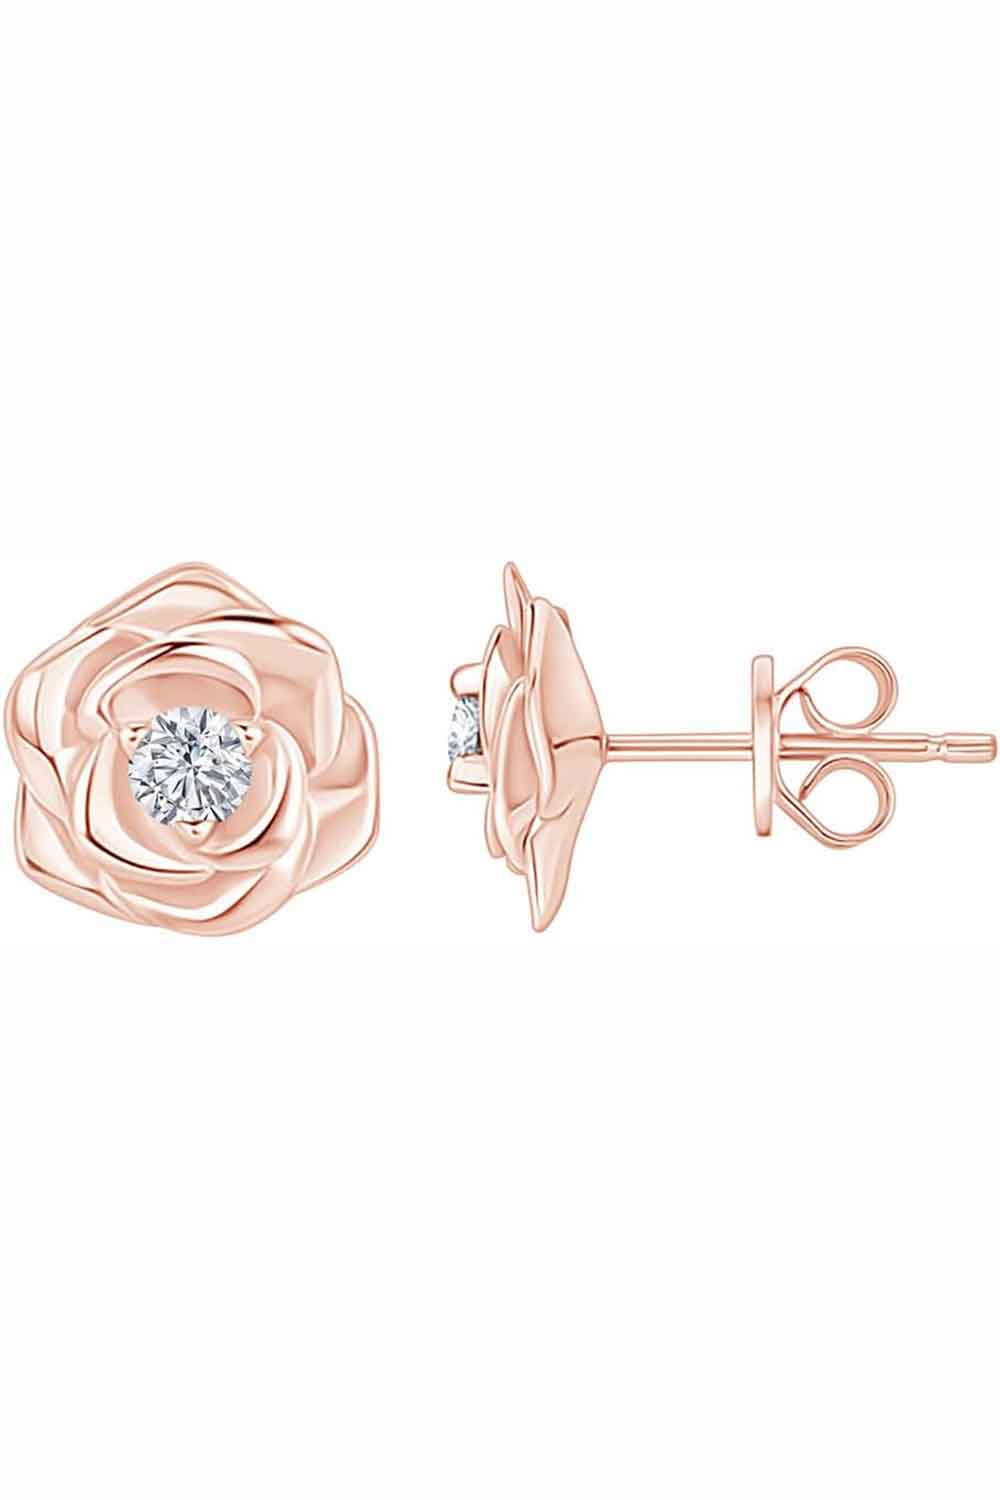 Rose Gold Color Rose Flower Stud Earrings, Stud Earrings for Women